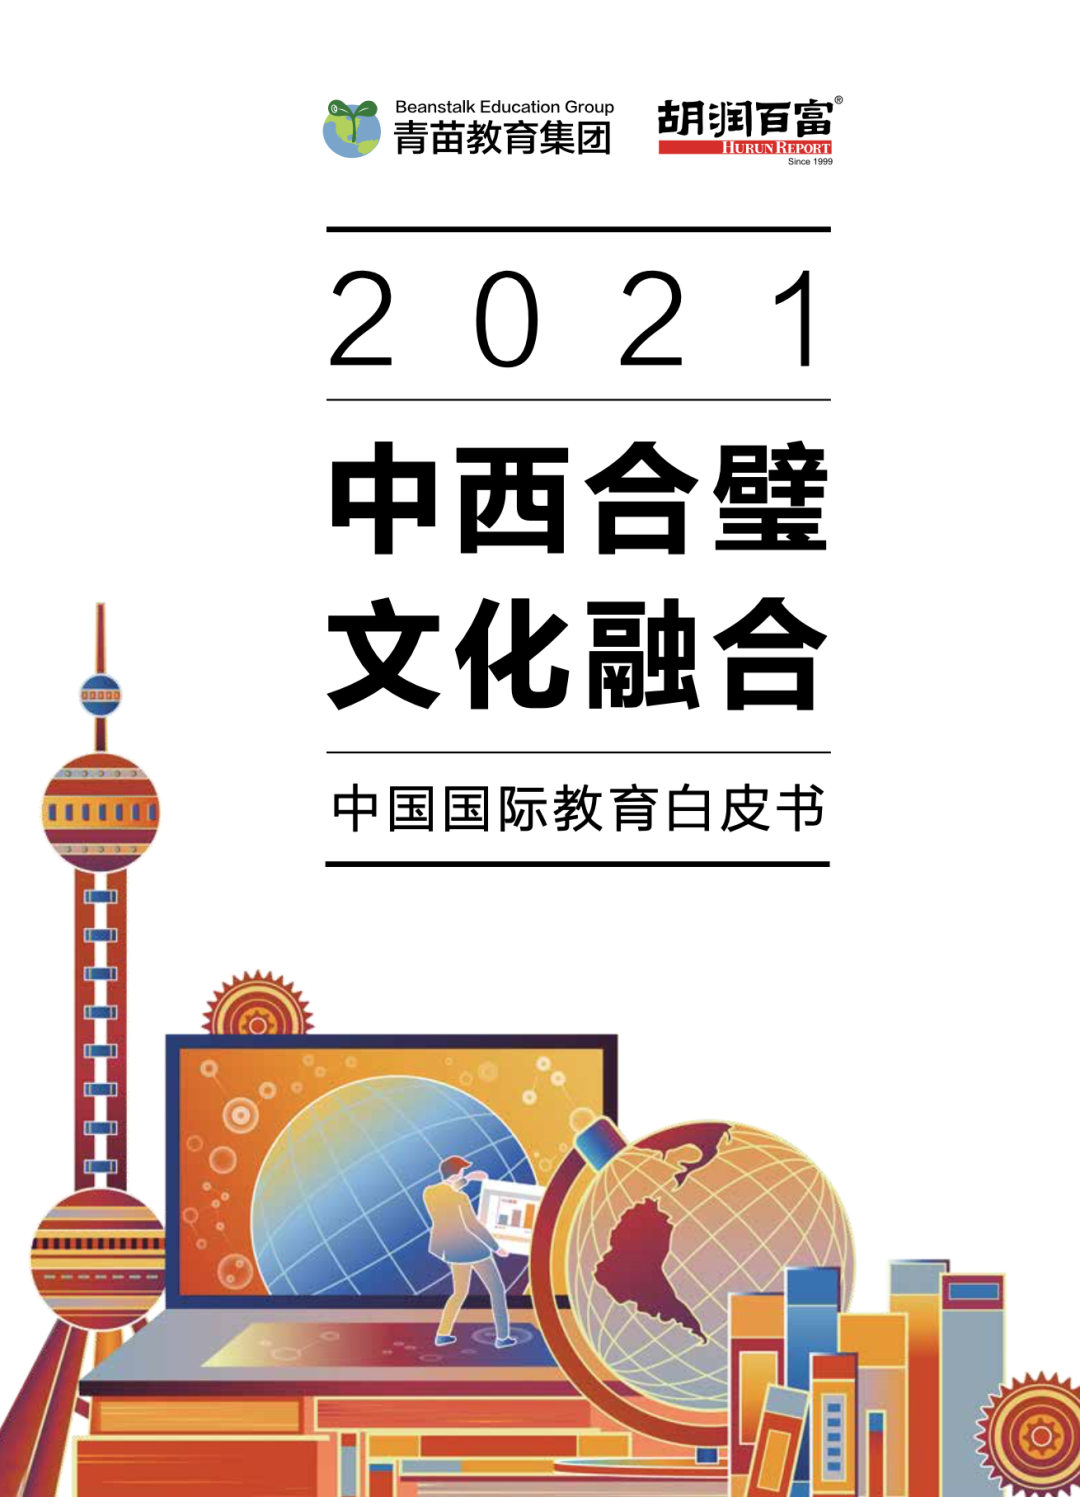 青苗教育集团与胡润研究院 联合发布《2021中国国际教育白皮书》